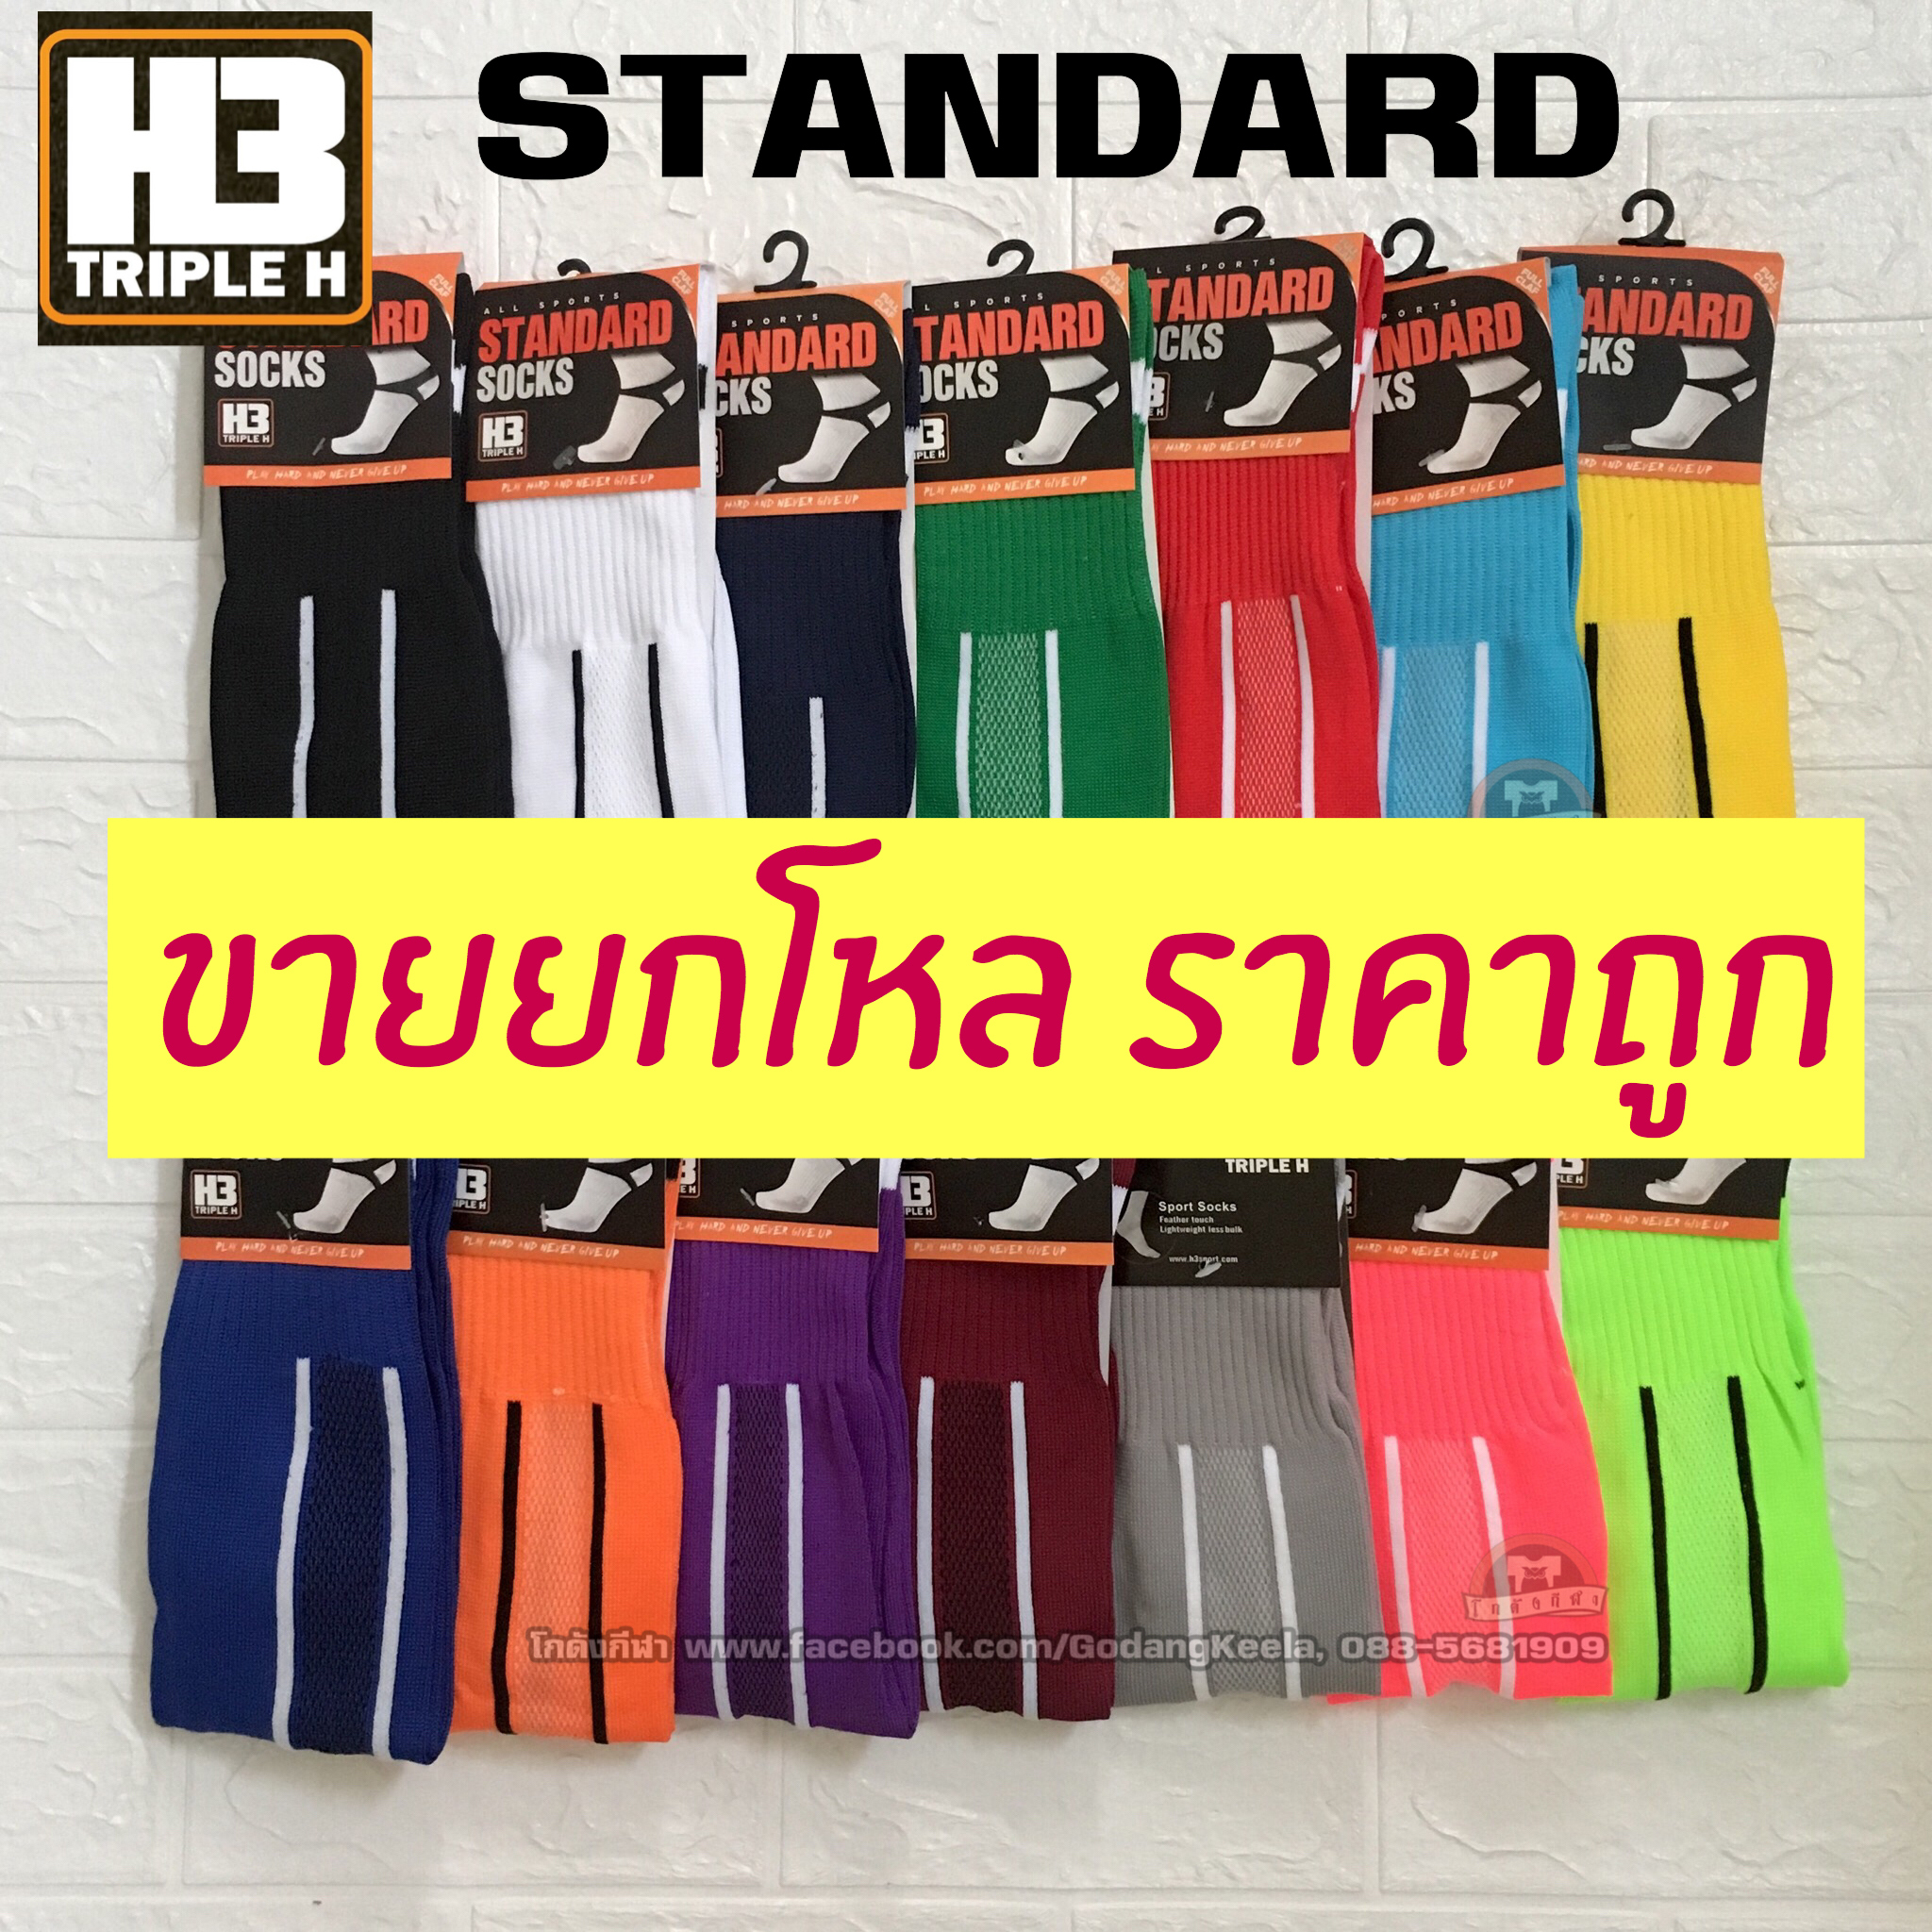 ถุงเท้าฟุตบอล H3 รุ่น Standard sock ยกโหล 12 คู่